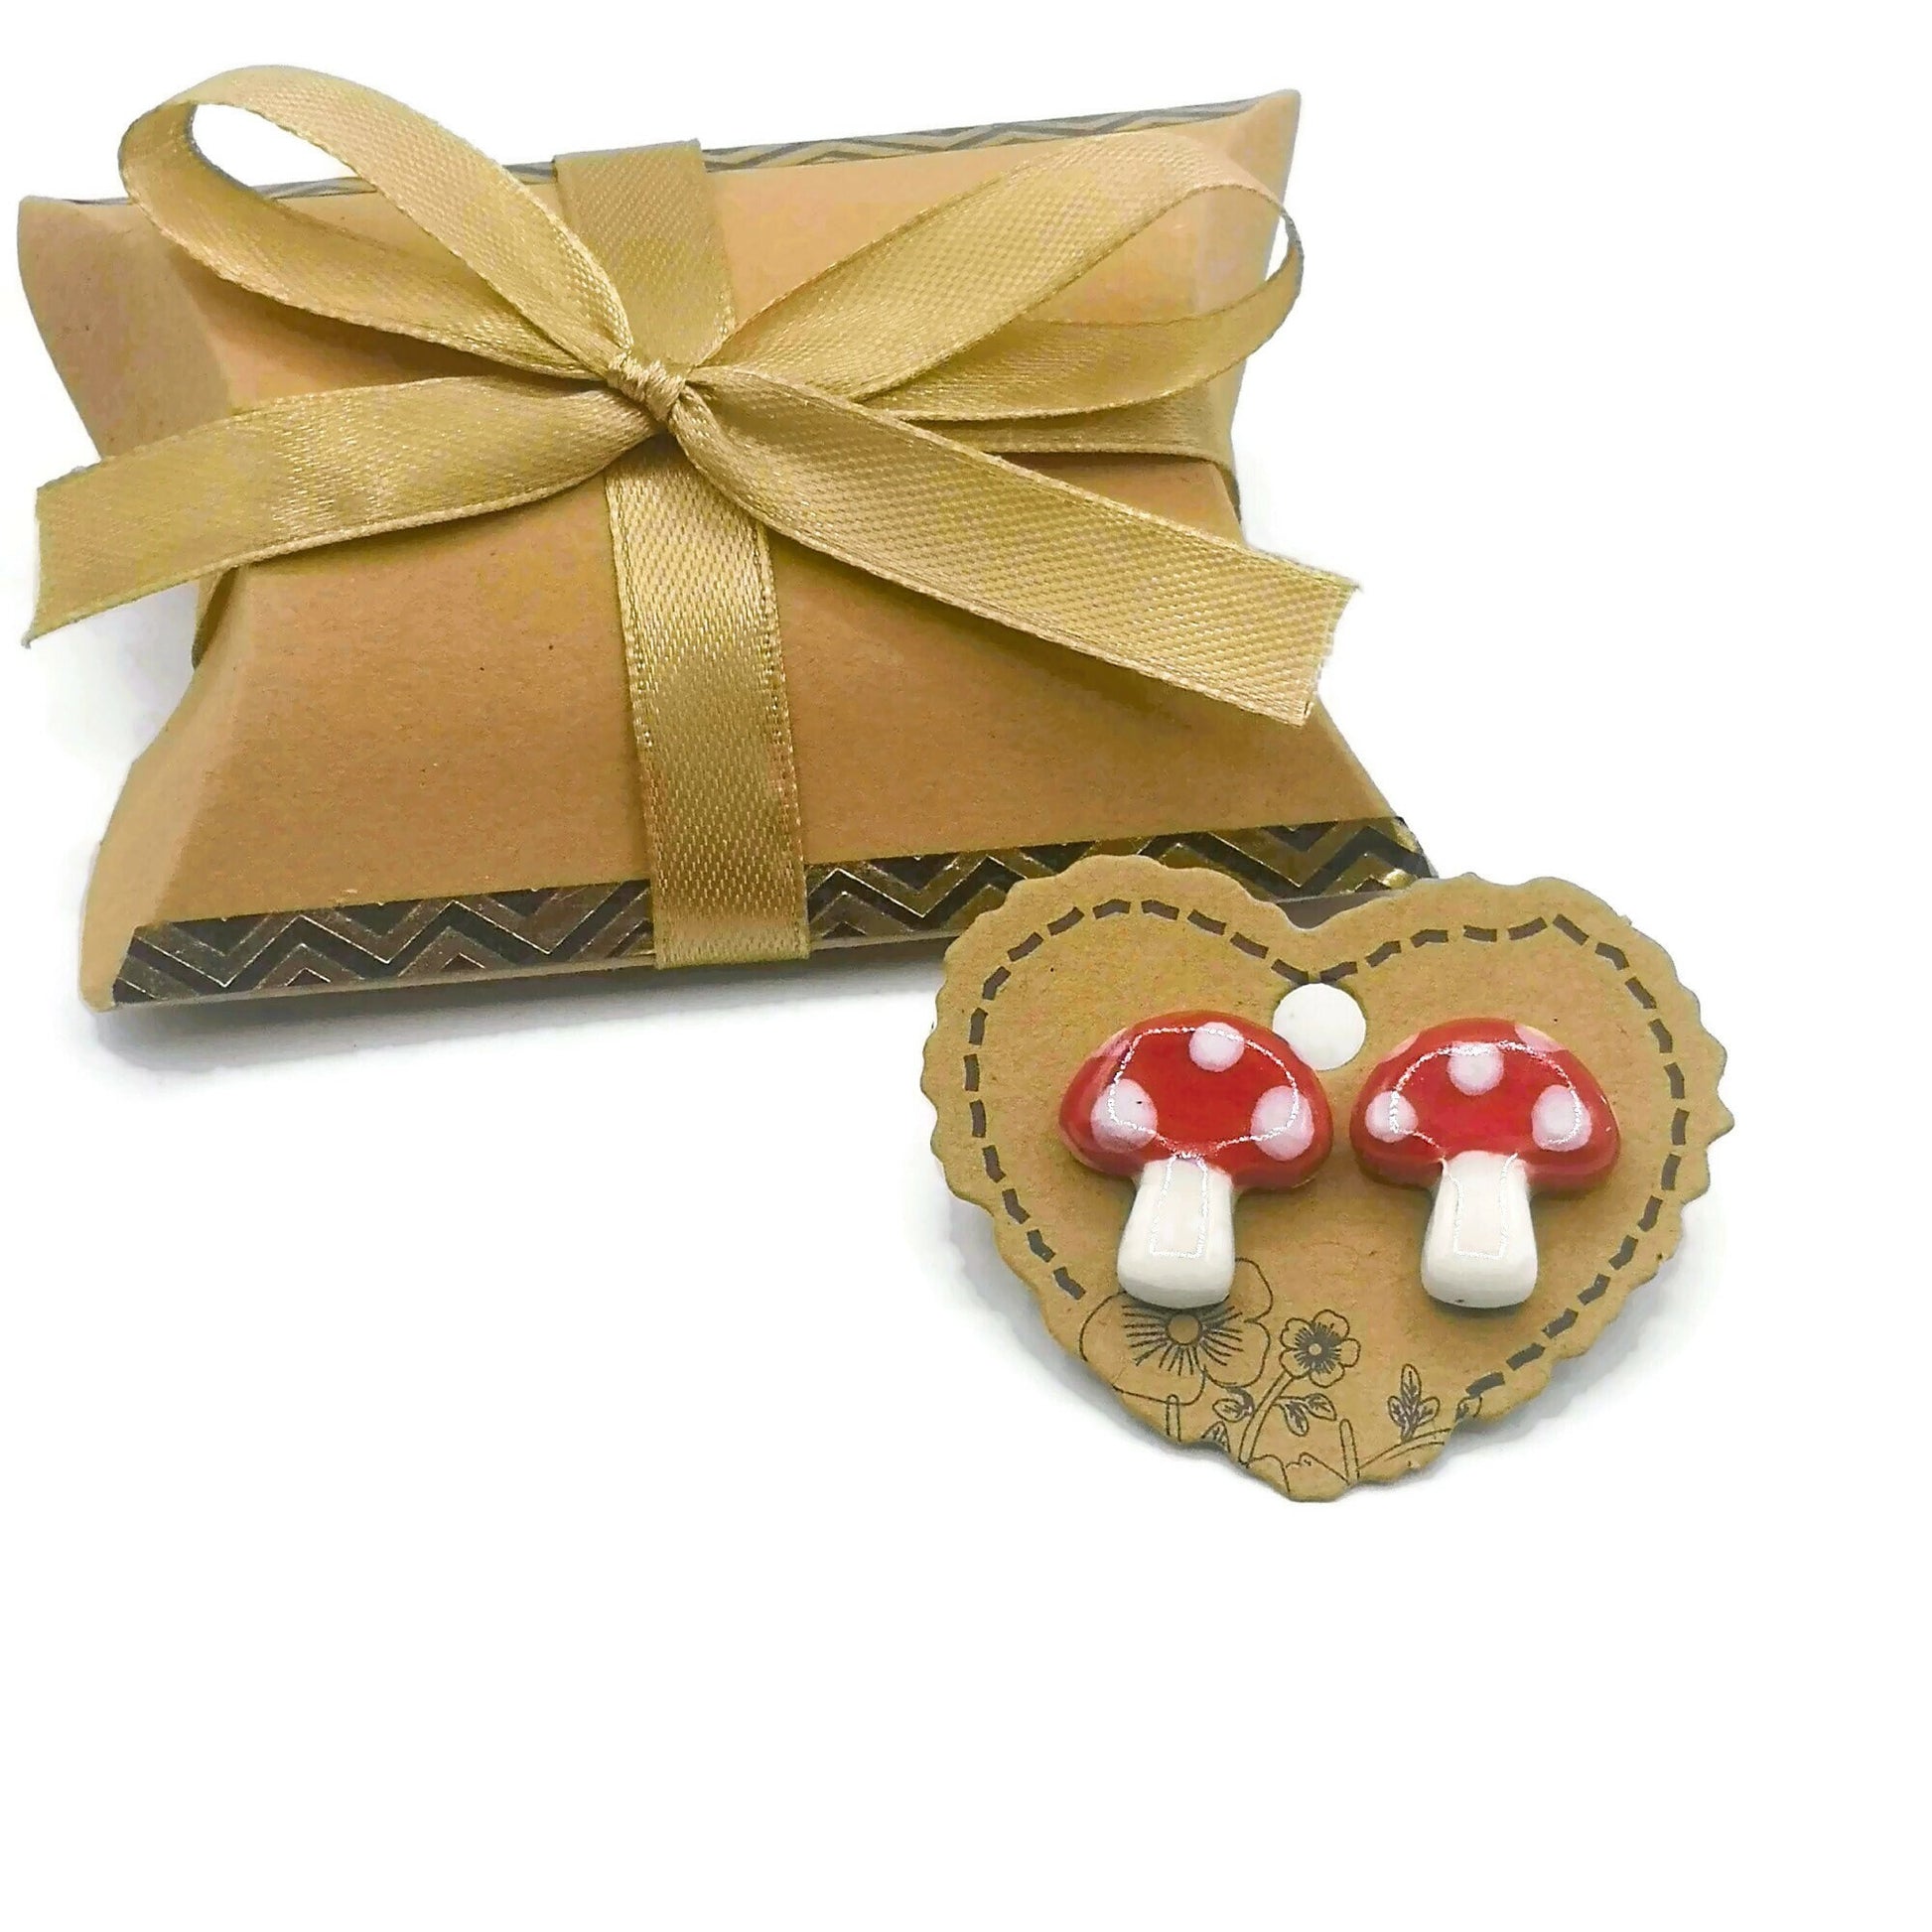 Handmade Red Mushroom Stud Earrings For Women, Clay Designer Earrings, Stocking Stuffer For Teen Girl, Ceramic Jewelry Best Gifts For Her - Ceramica Ana Rafael